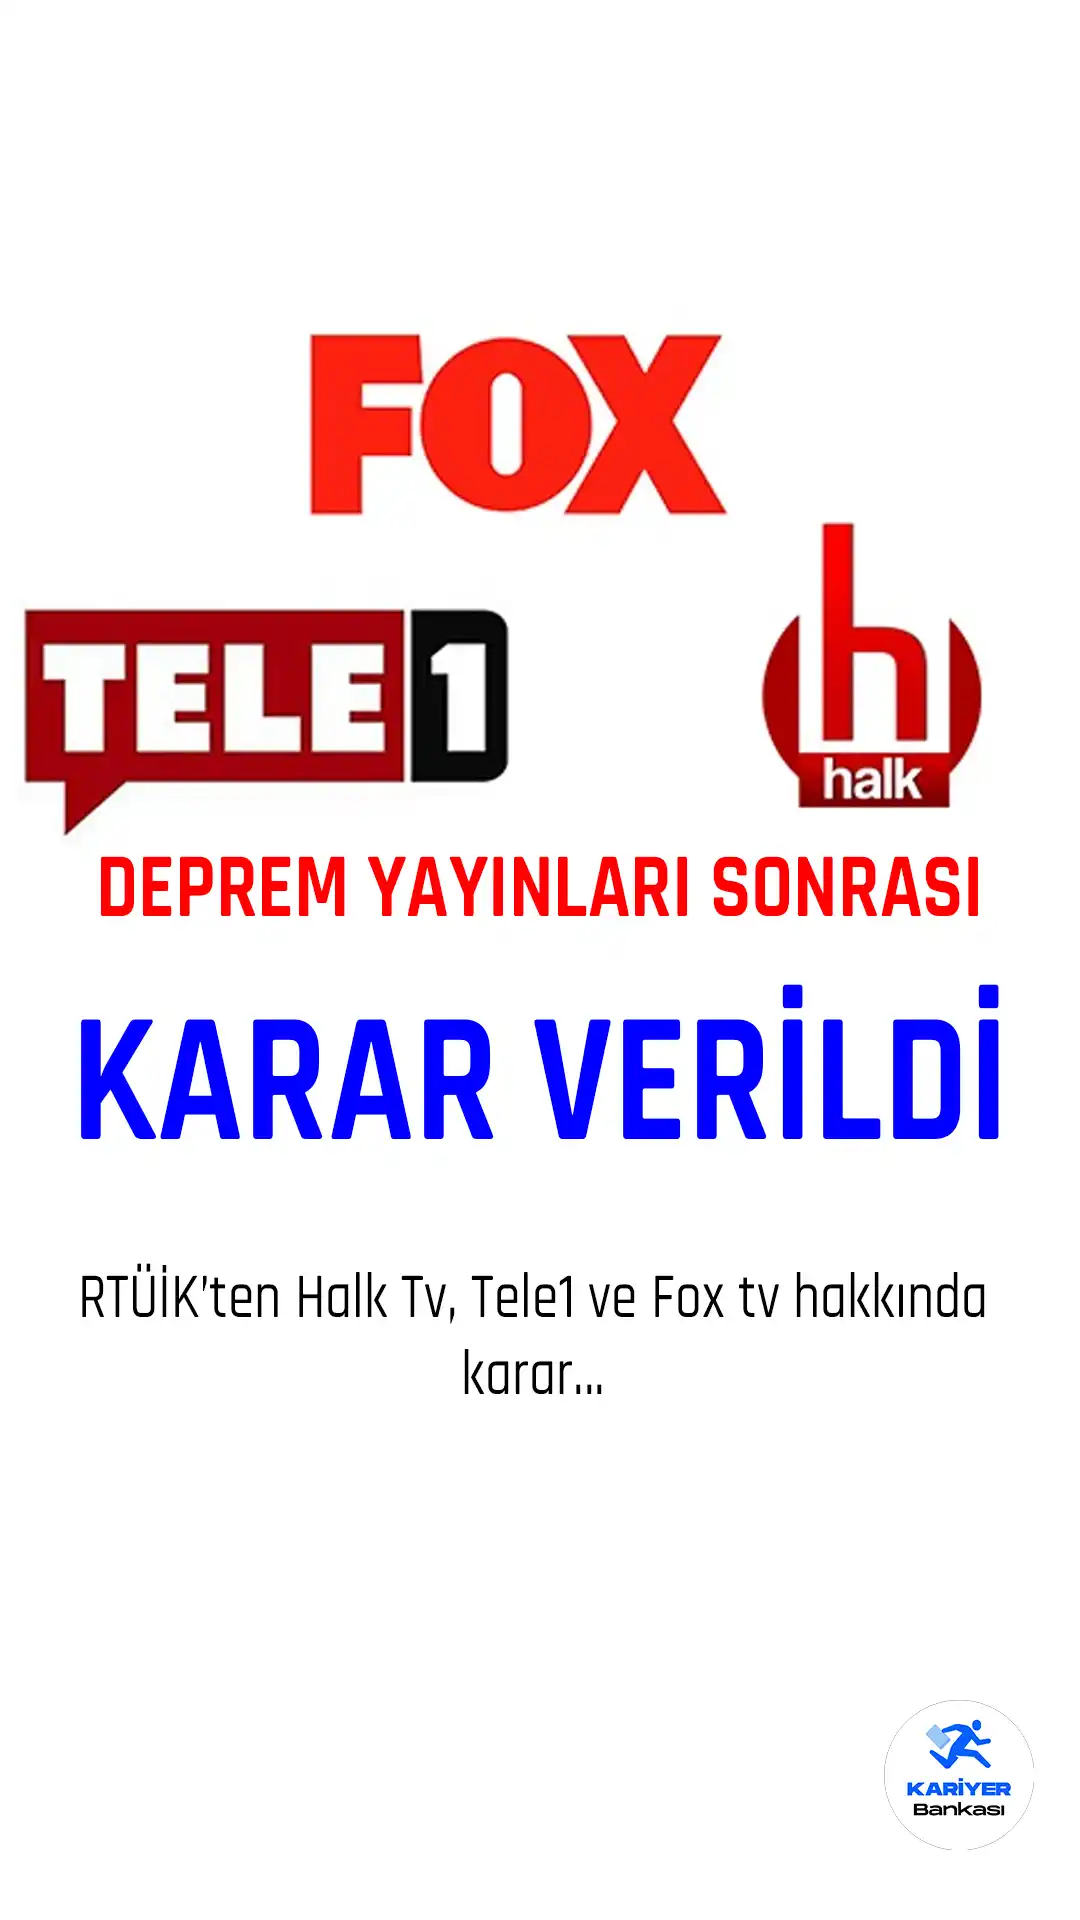 Halk tv, Fox ve Tele1 hakkında Karar verildi